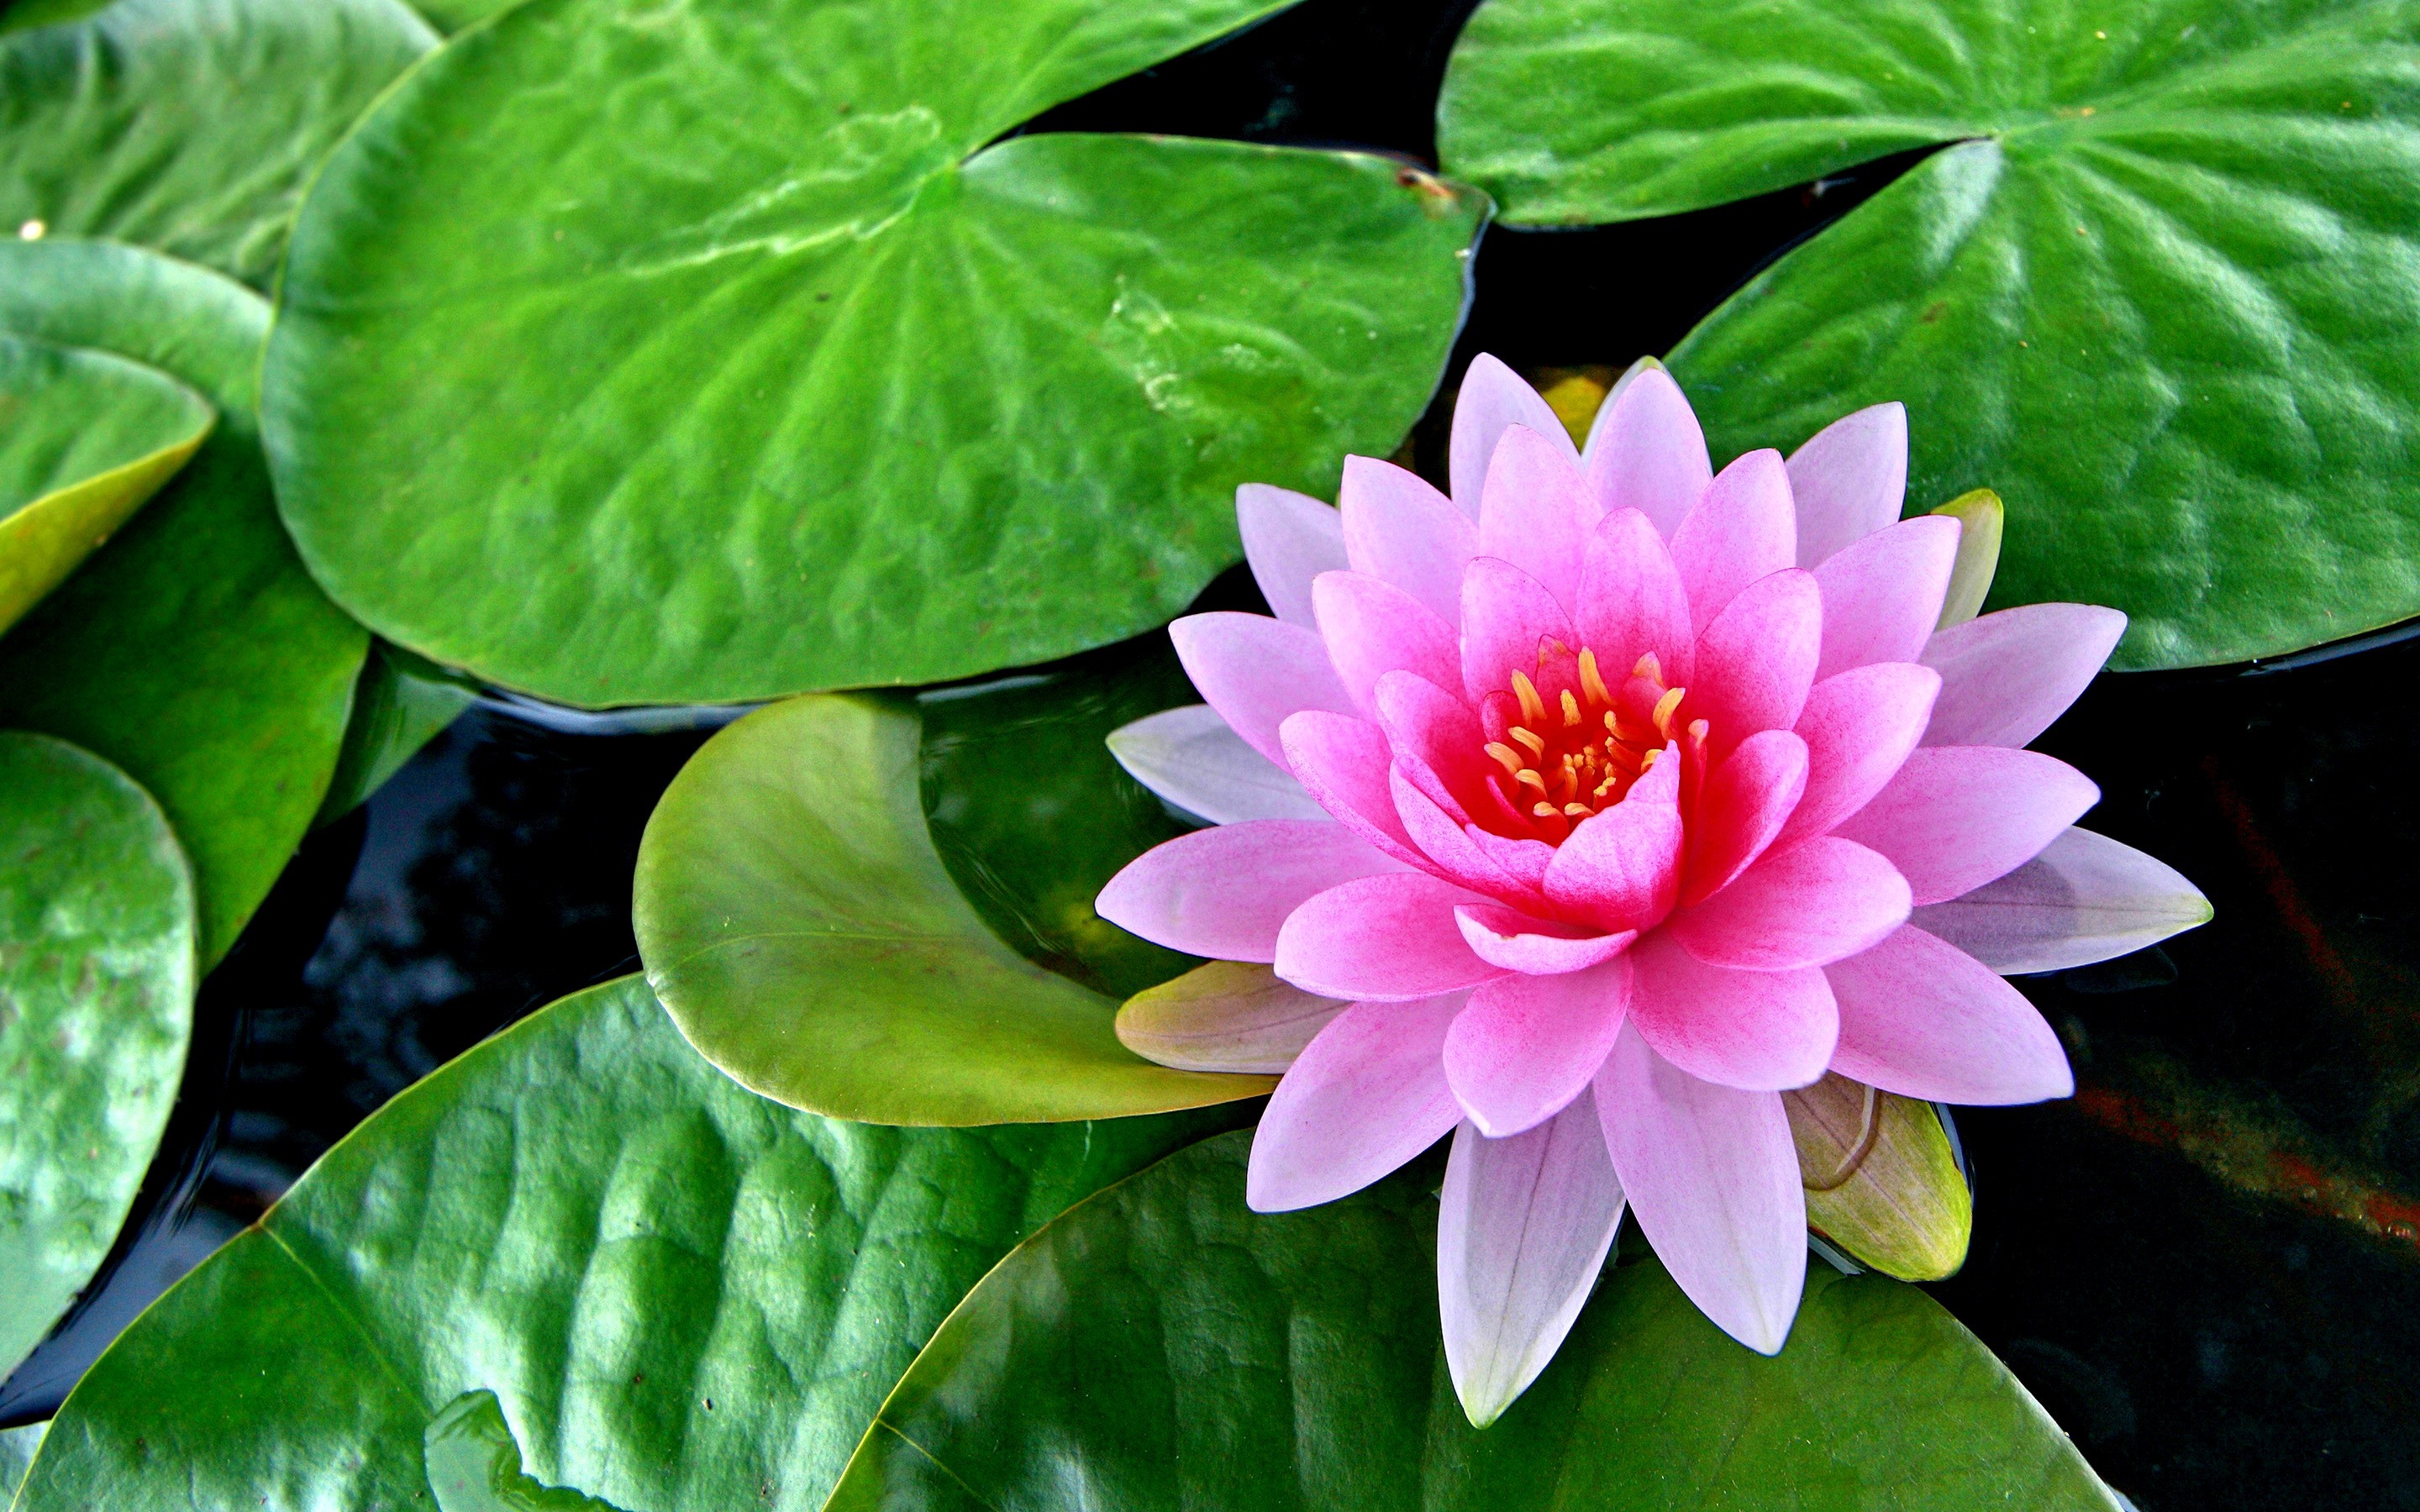 lotus flower pink leaves pond resolution 2880 1800 wallpapers13 desktop ipad